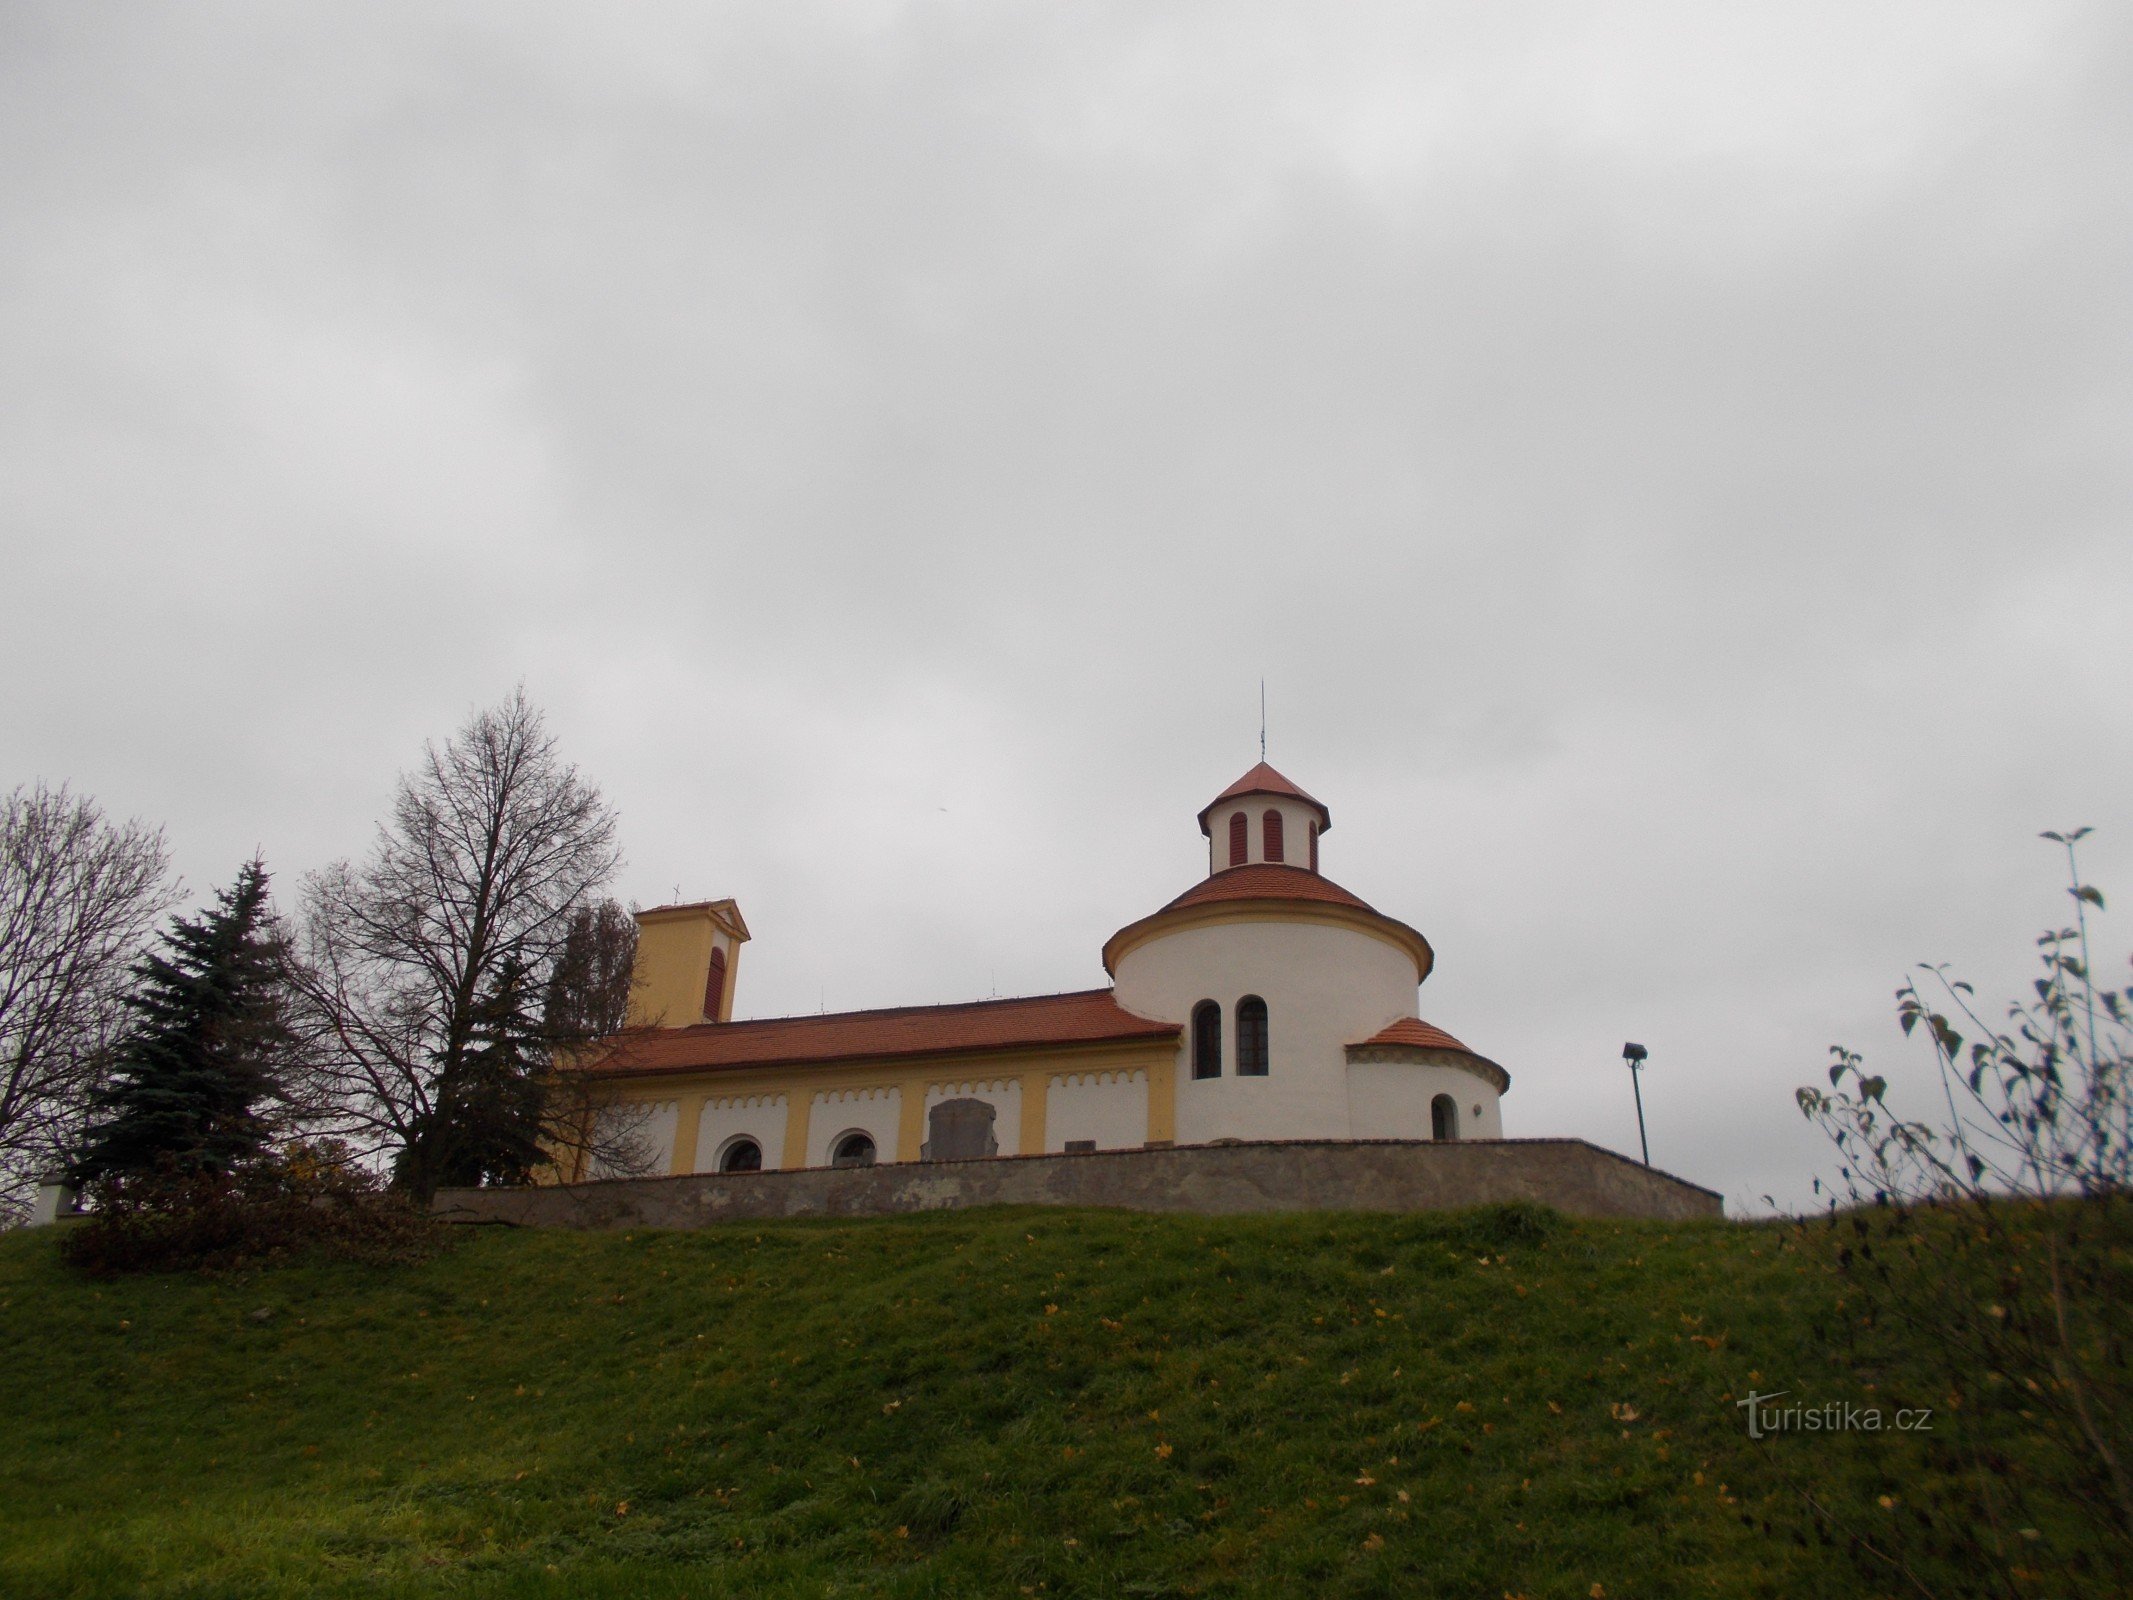 Εκκλησία του Αγίου Πέτρου και Παύλου στο Želkovice.